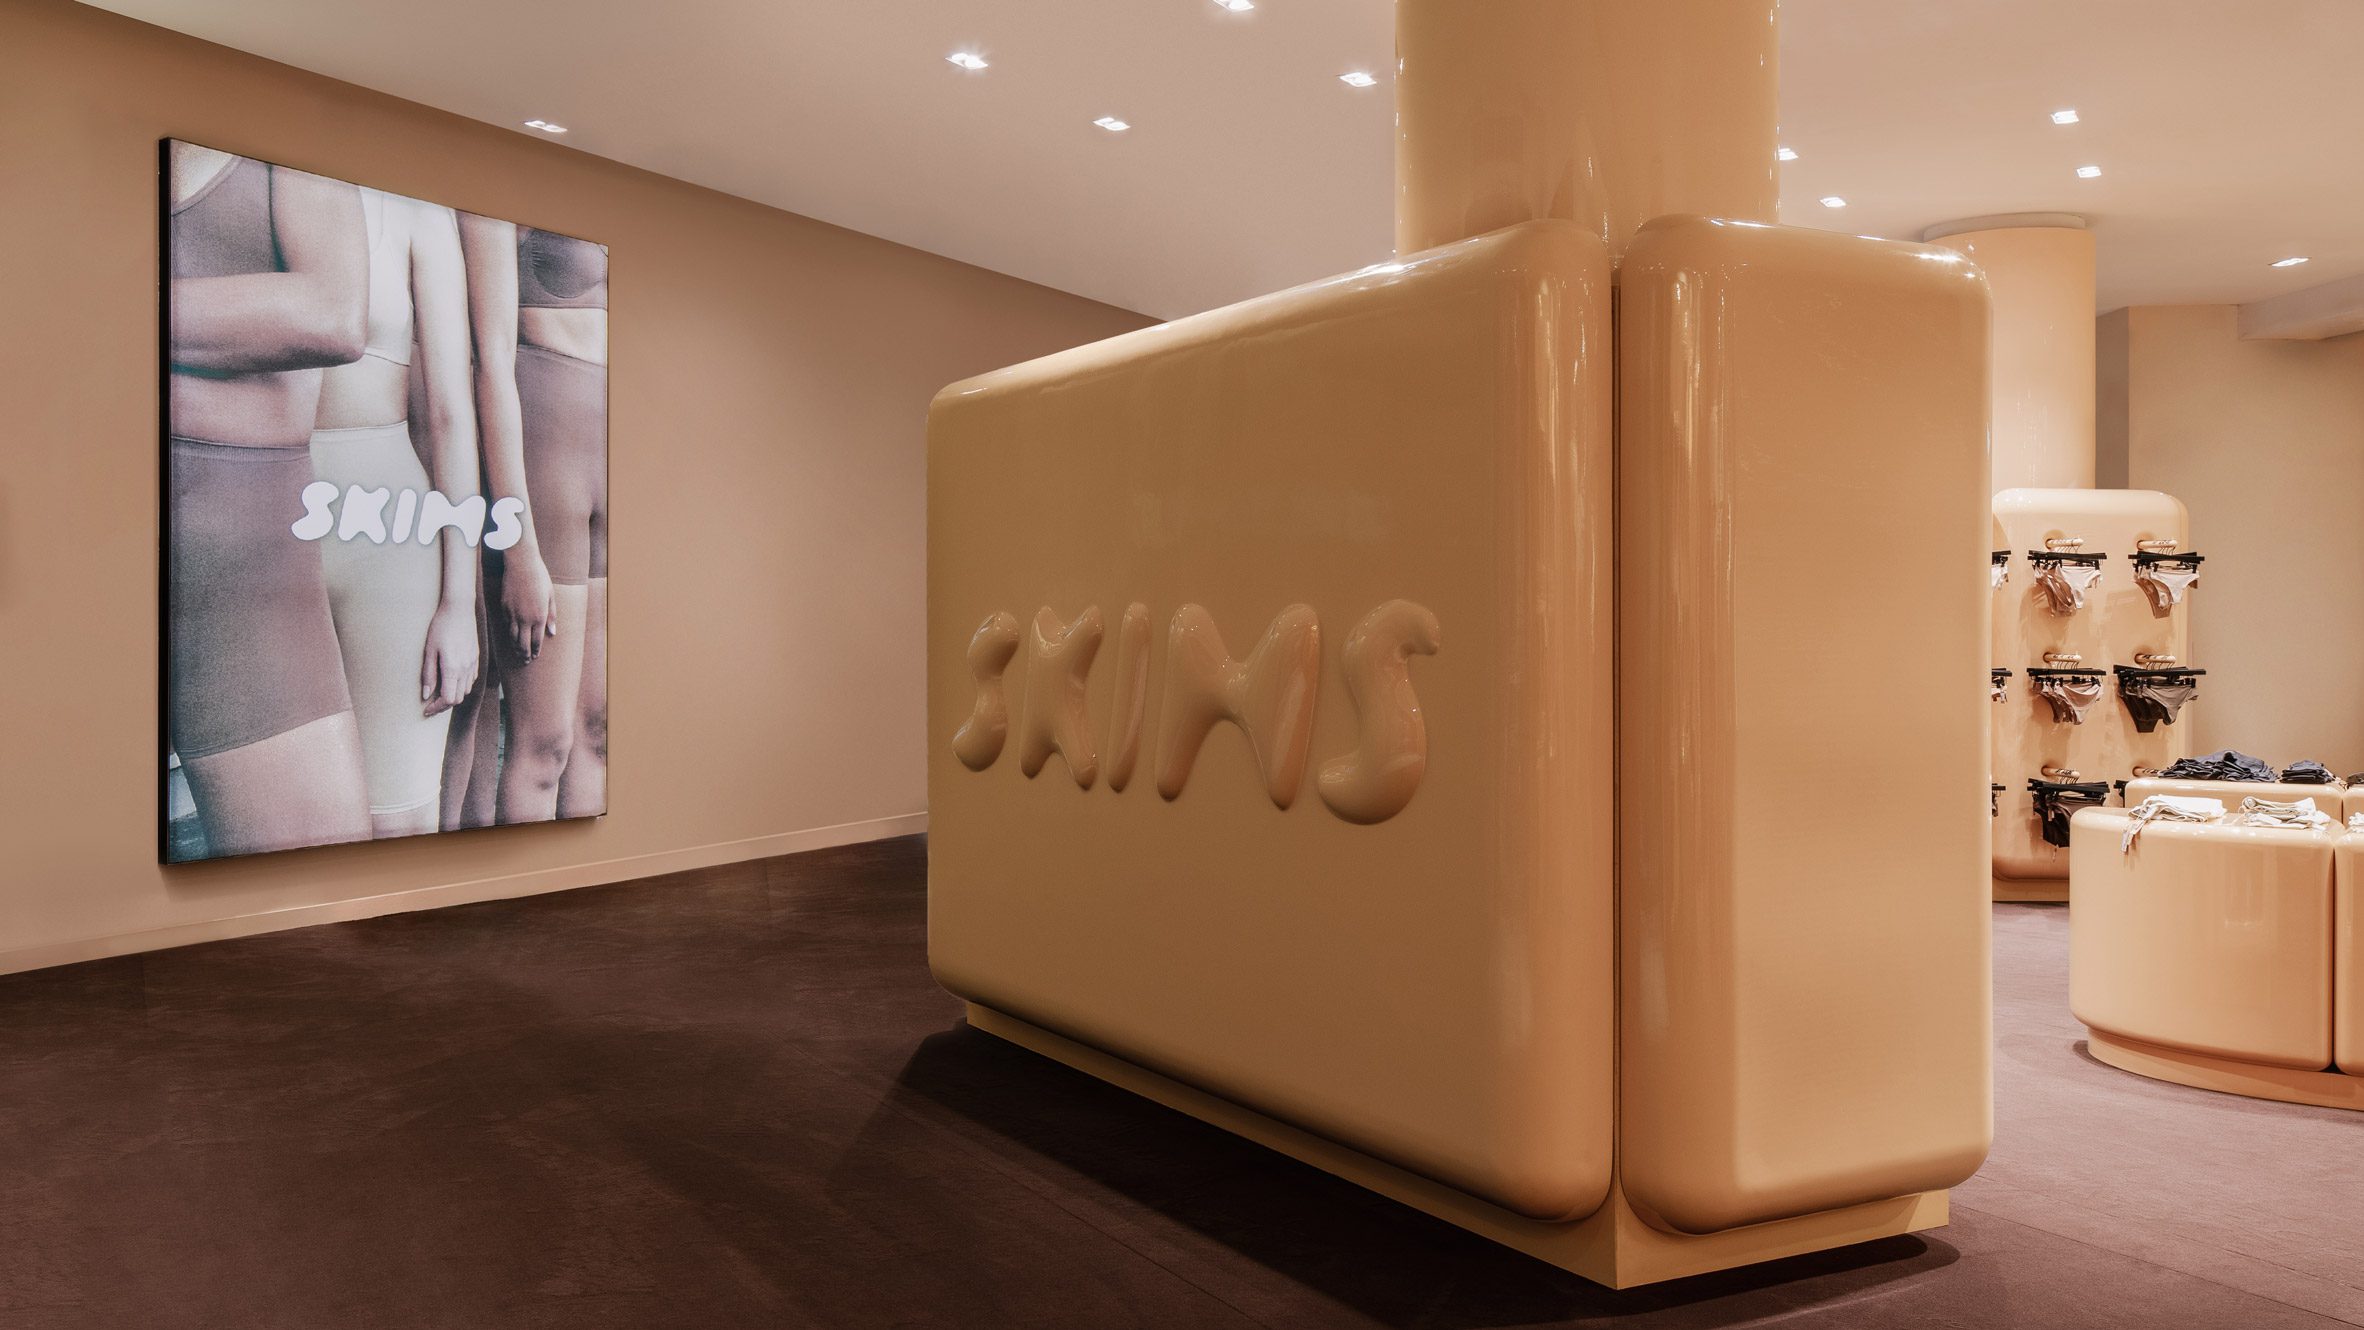 Where to buy SKIMS: The stores that stock Kim Kardashian's